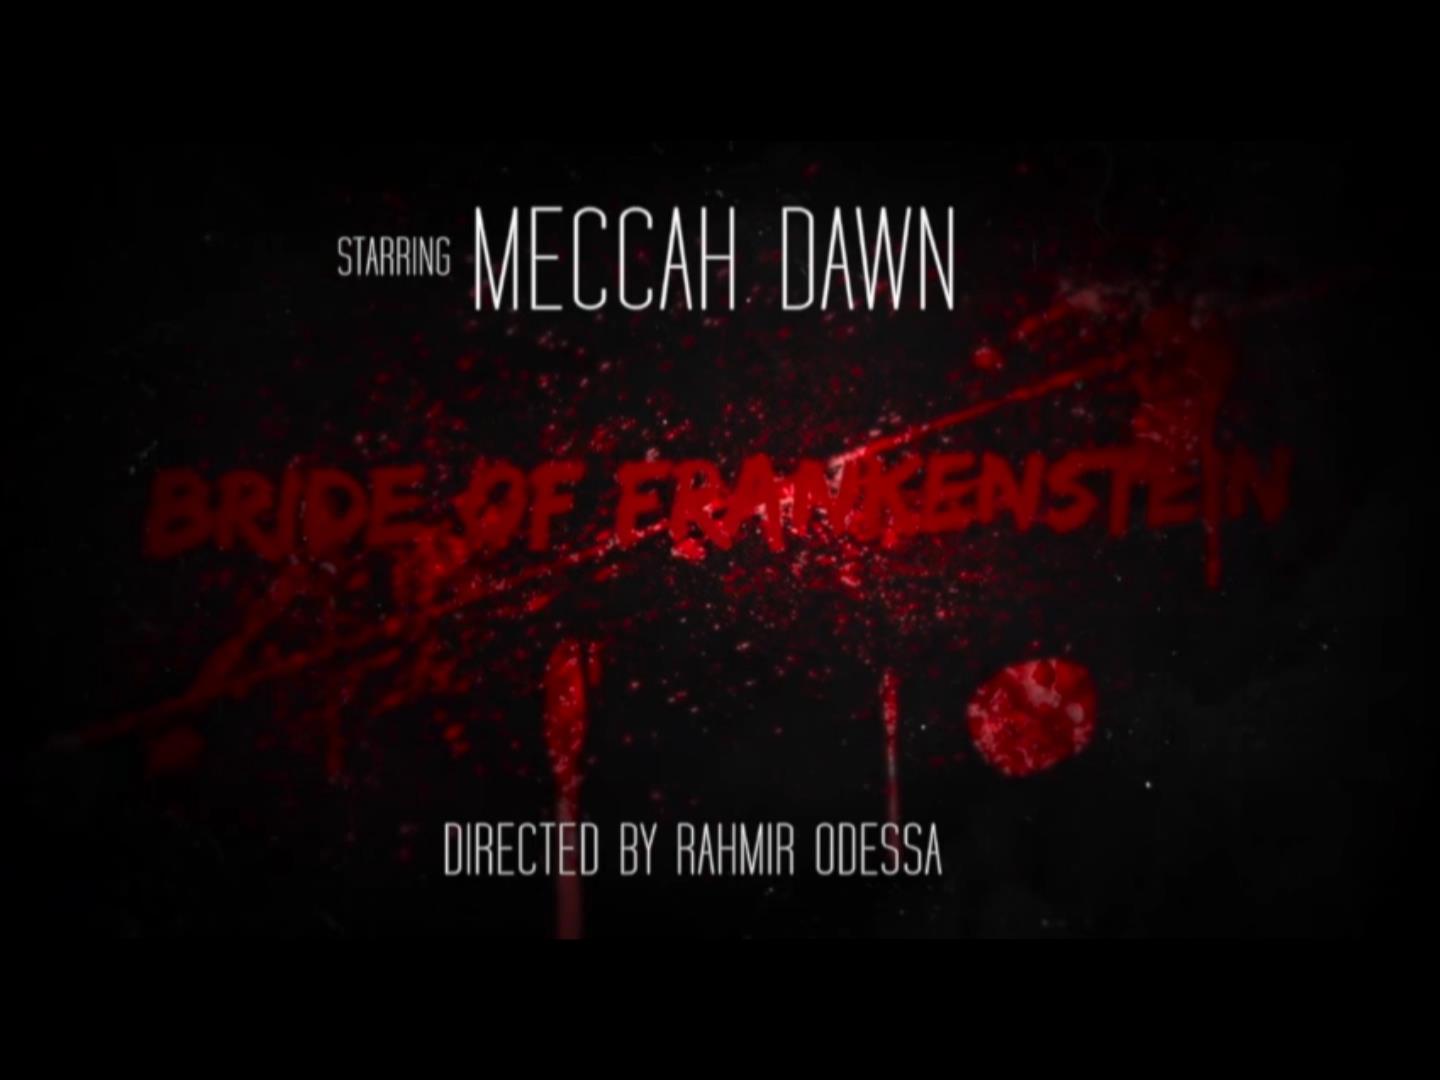  Meccah Dawn – “Bride Of Frankenstein”